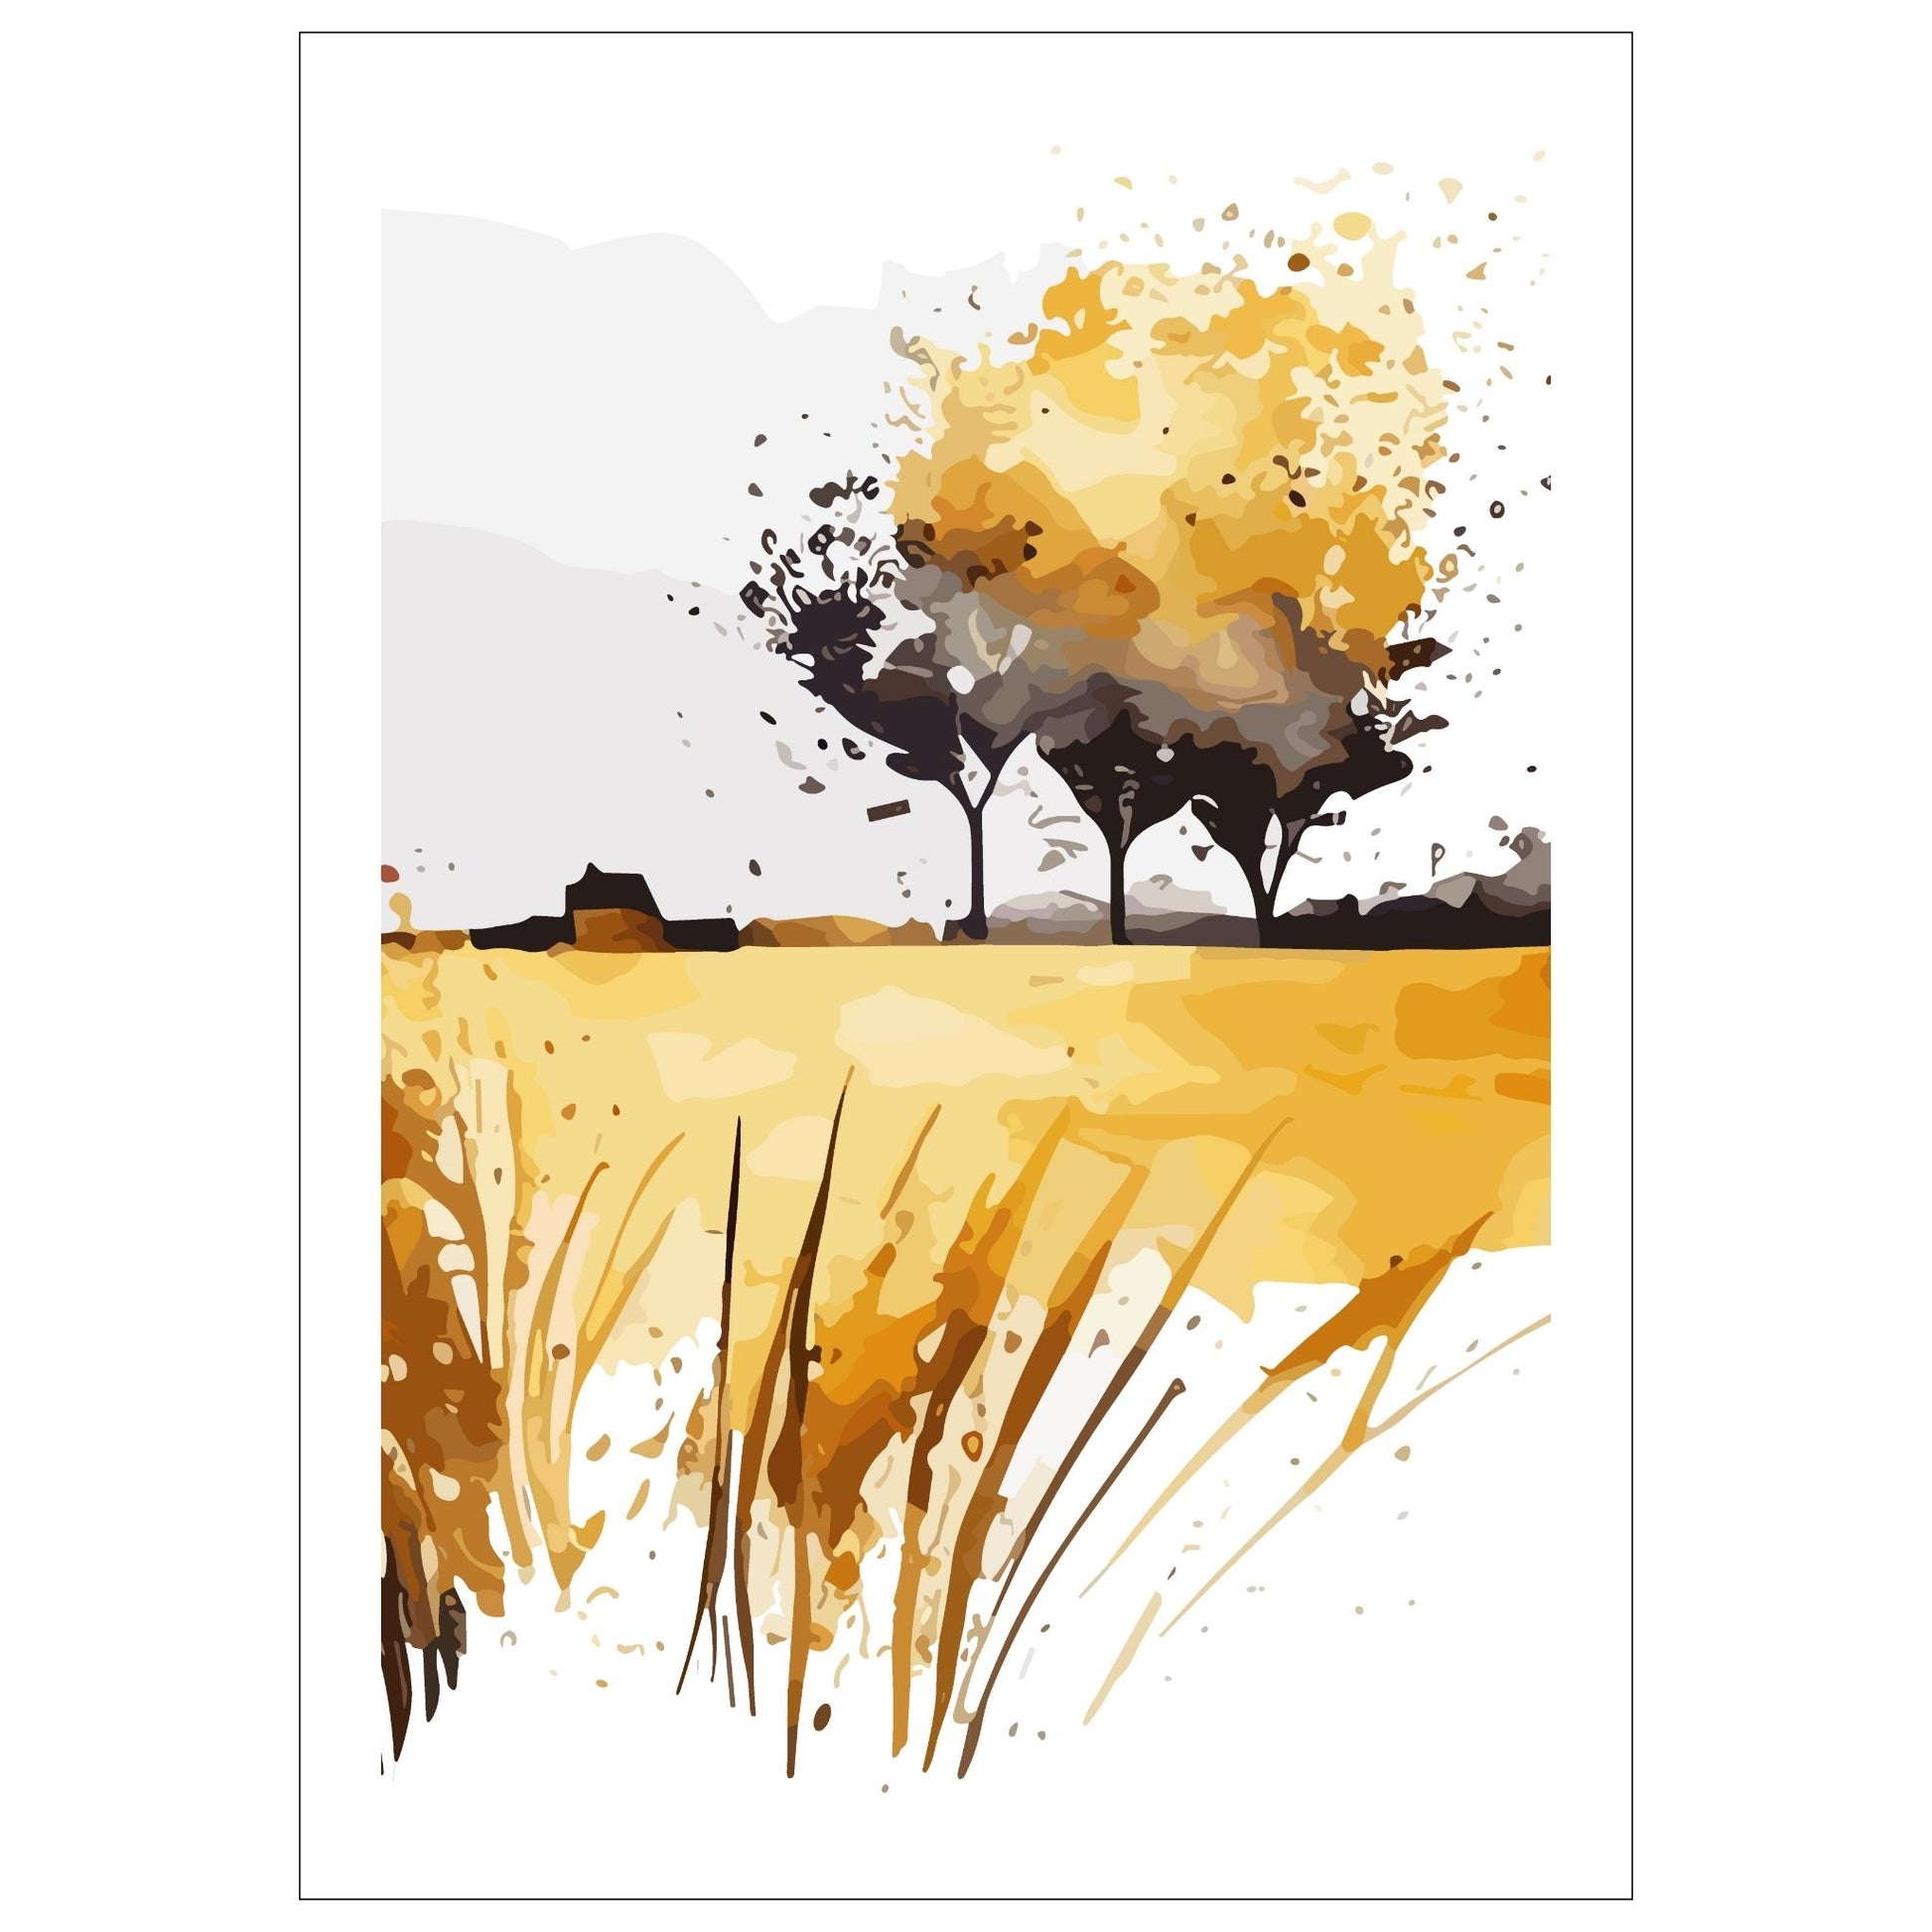 White Fields er en serie med grafisk akvarell. Motivet er åkerlandskap i duse orange, beige og svarte nyanser. Plakaten har en hvit kant som gir dybde og fremhever motivet.